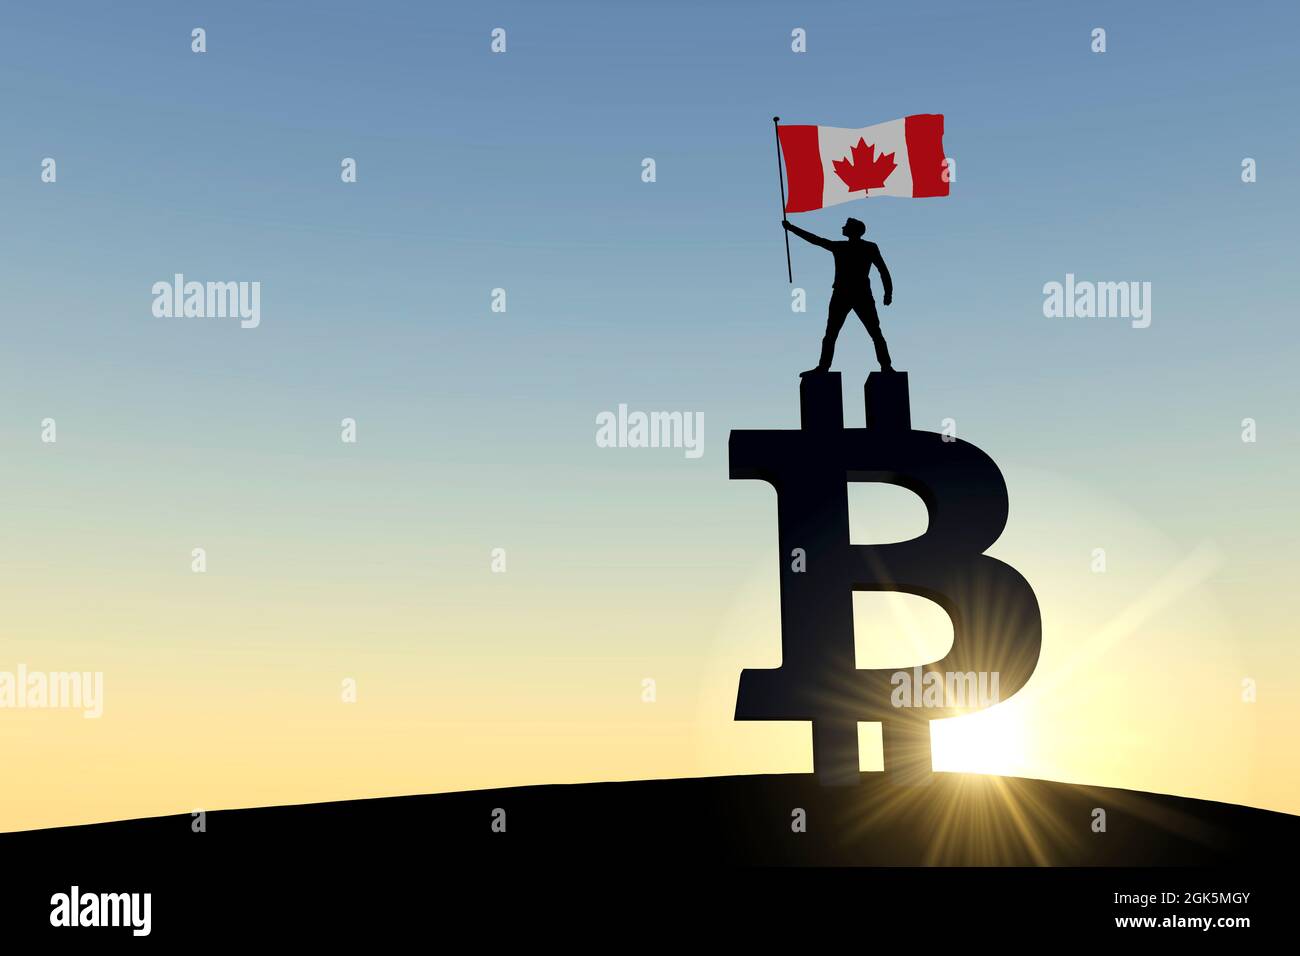 Personne qui agite un drapeau du canada sur un symbole de crypto-monnaie en bitcoin. Rendu 3D Banque D'Images